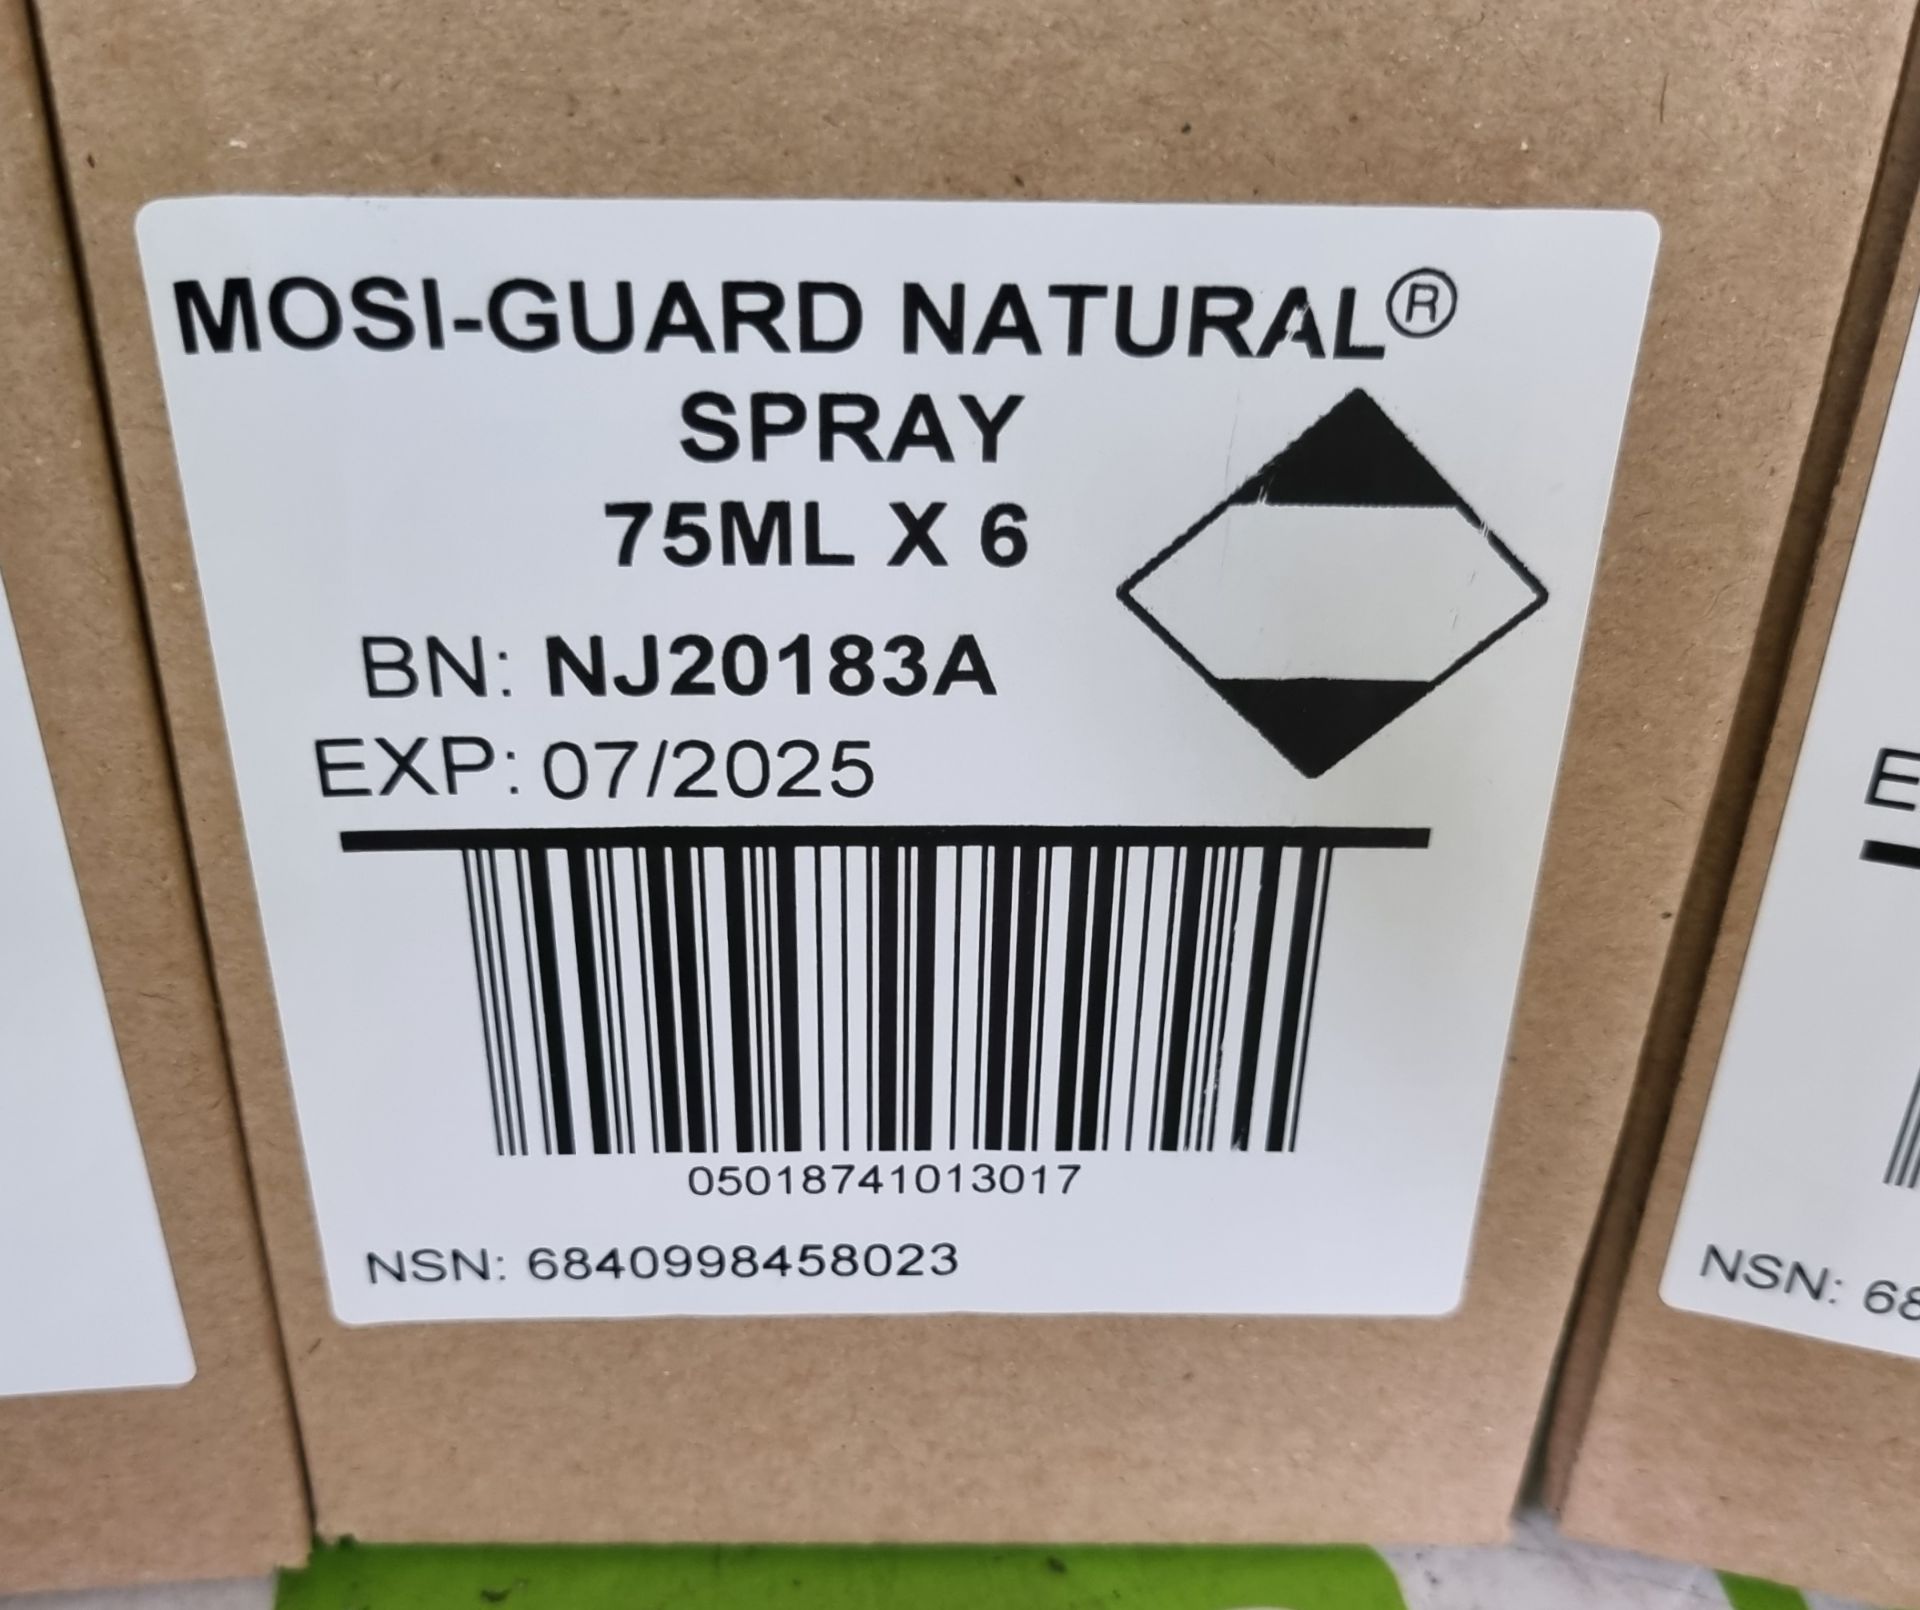 4x boxes of Mosi-Guard Natural Spray 75ml - 6 per box - Image 2 of 5